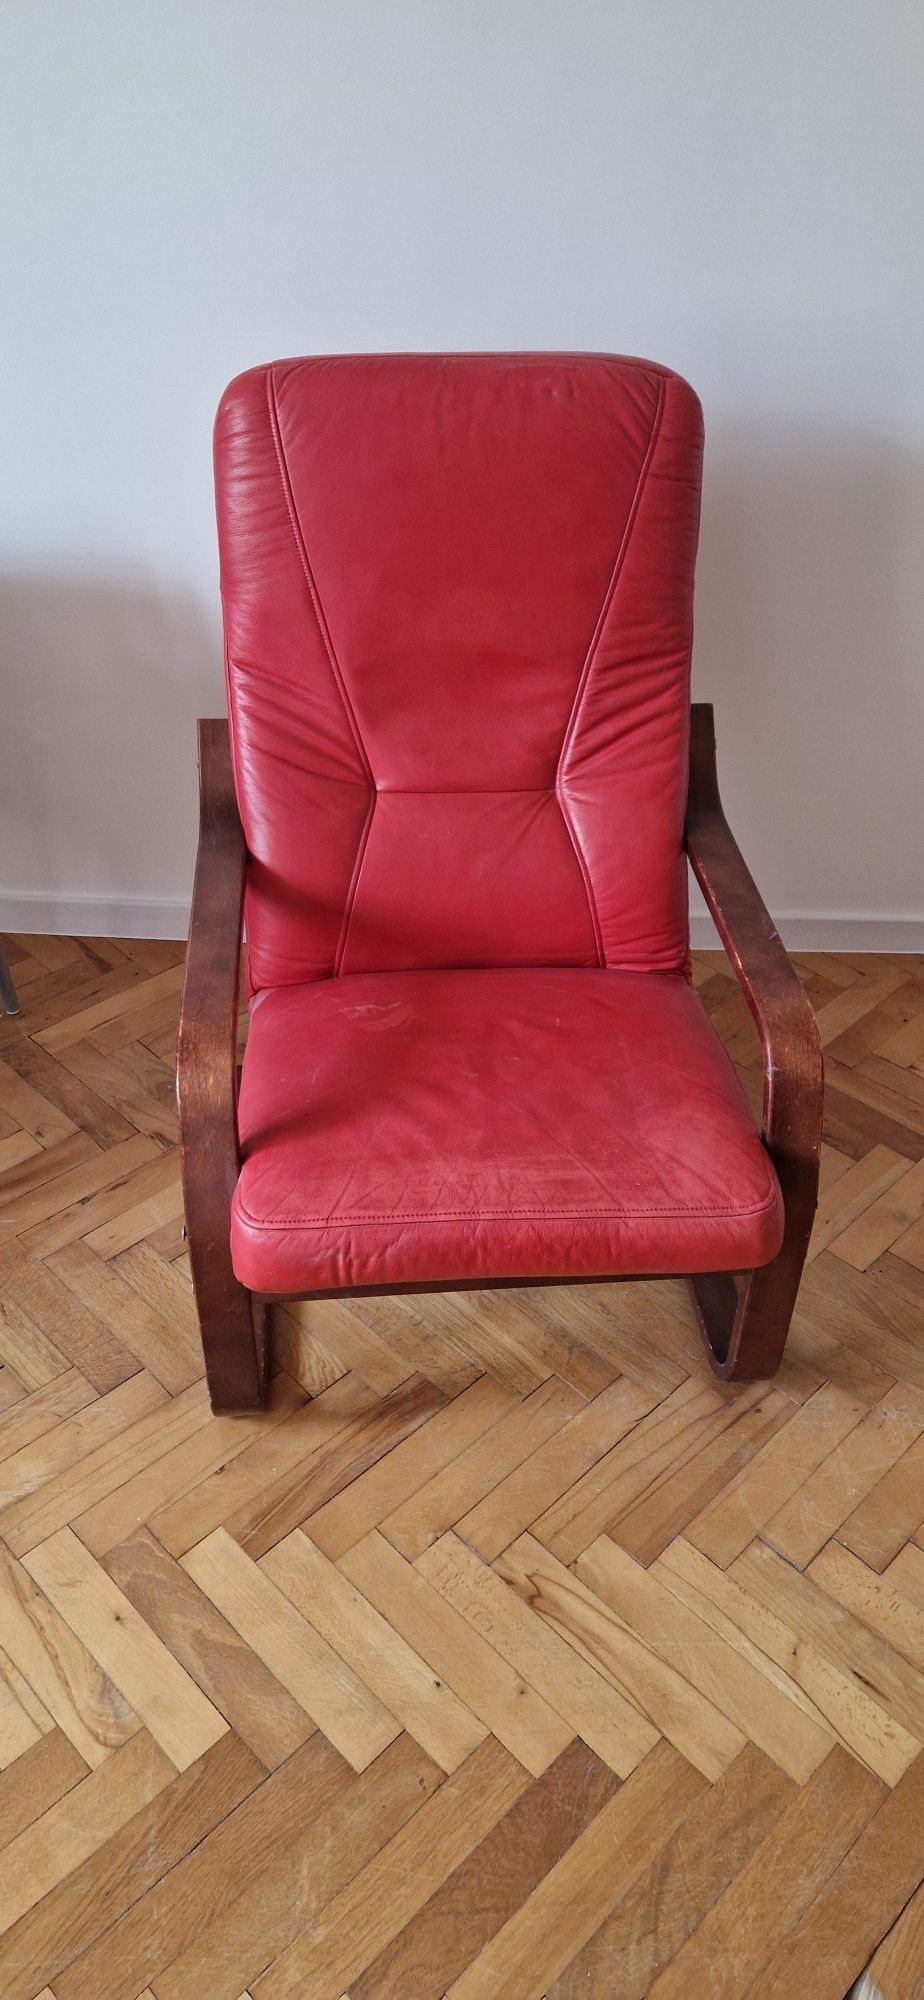 Fotel skórzany czerwony